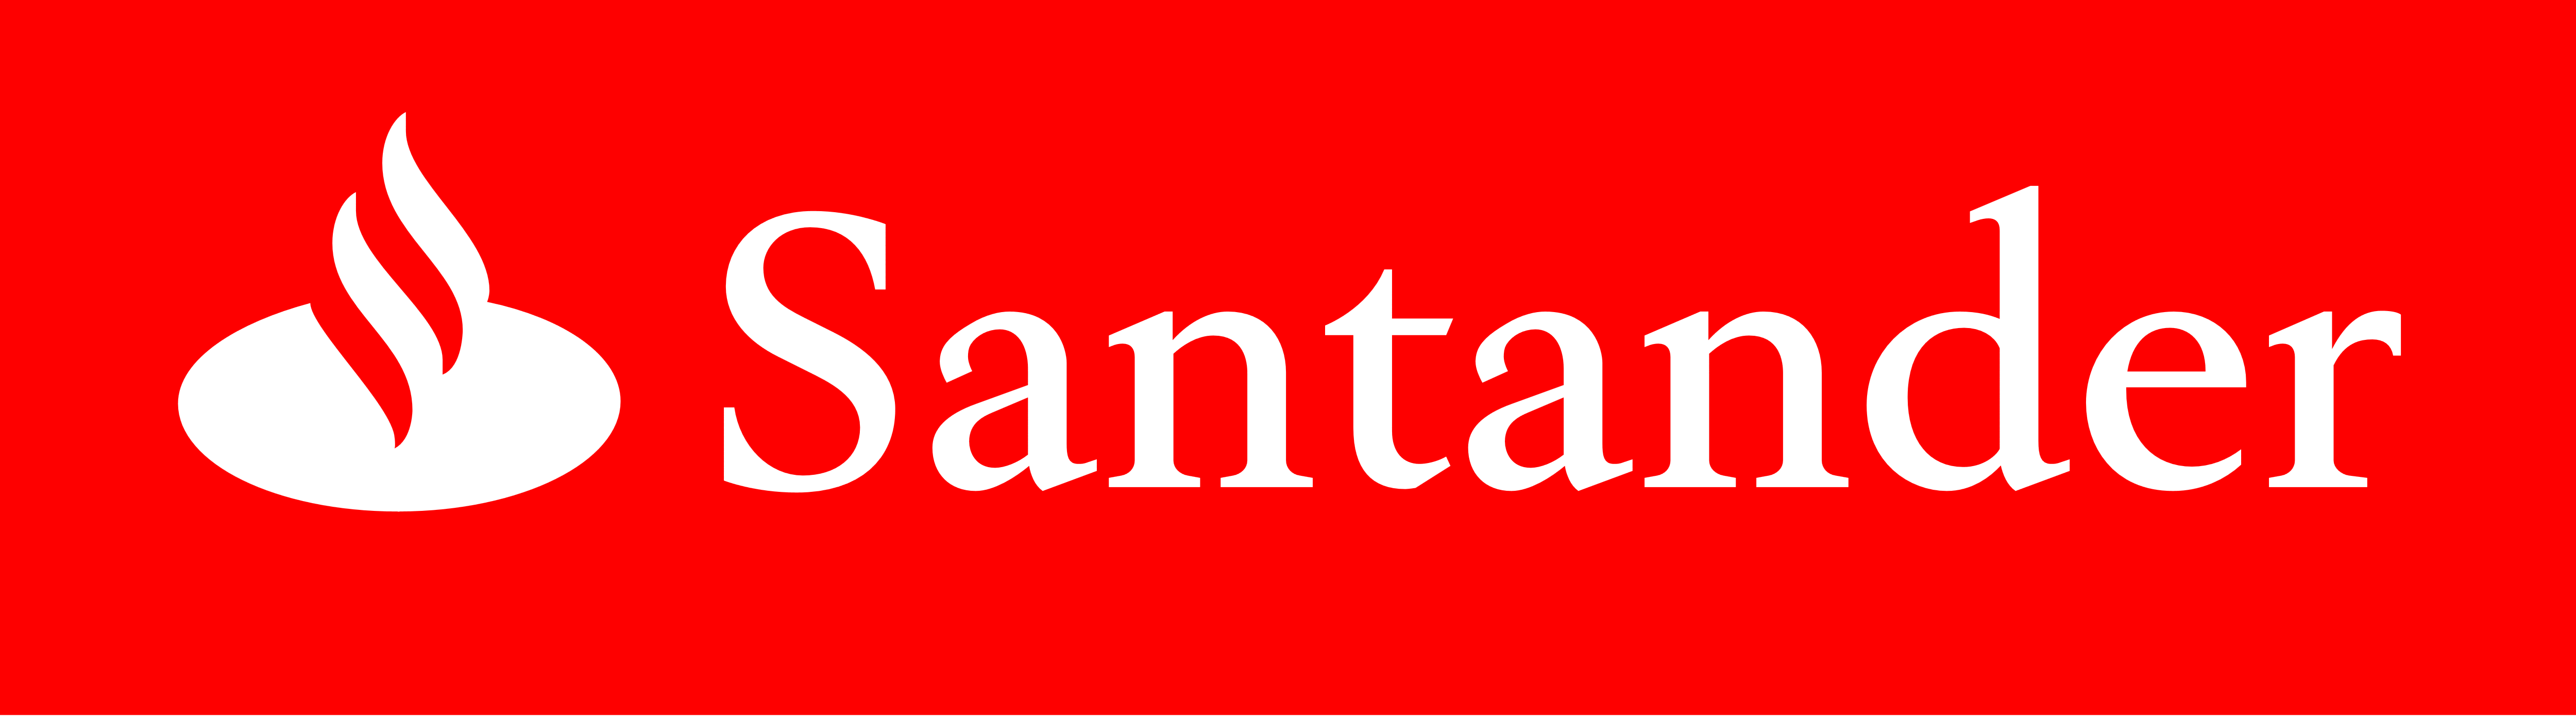 Santander Logos Download